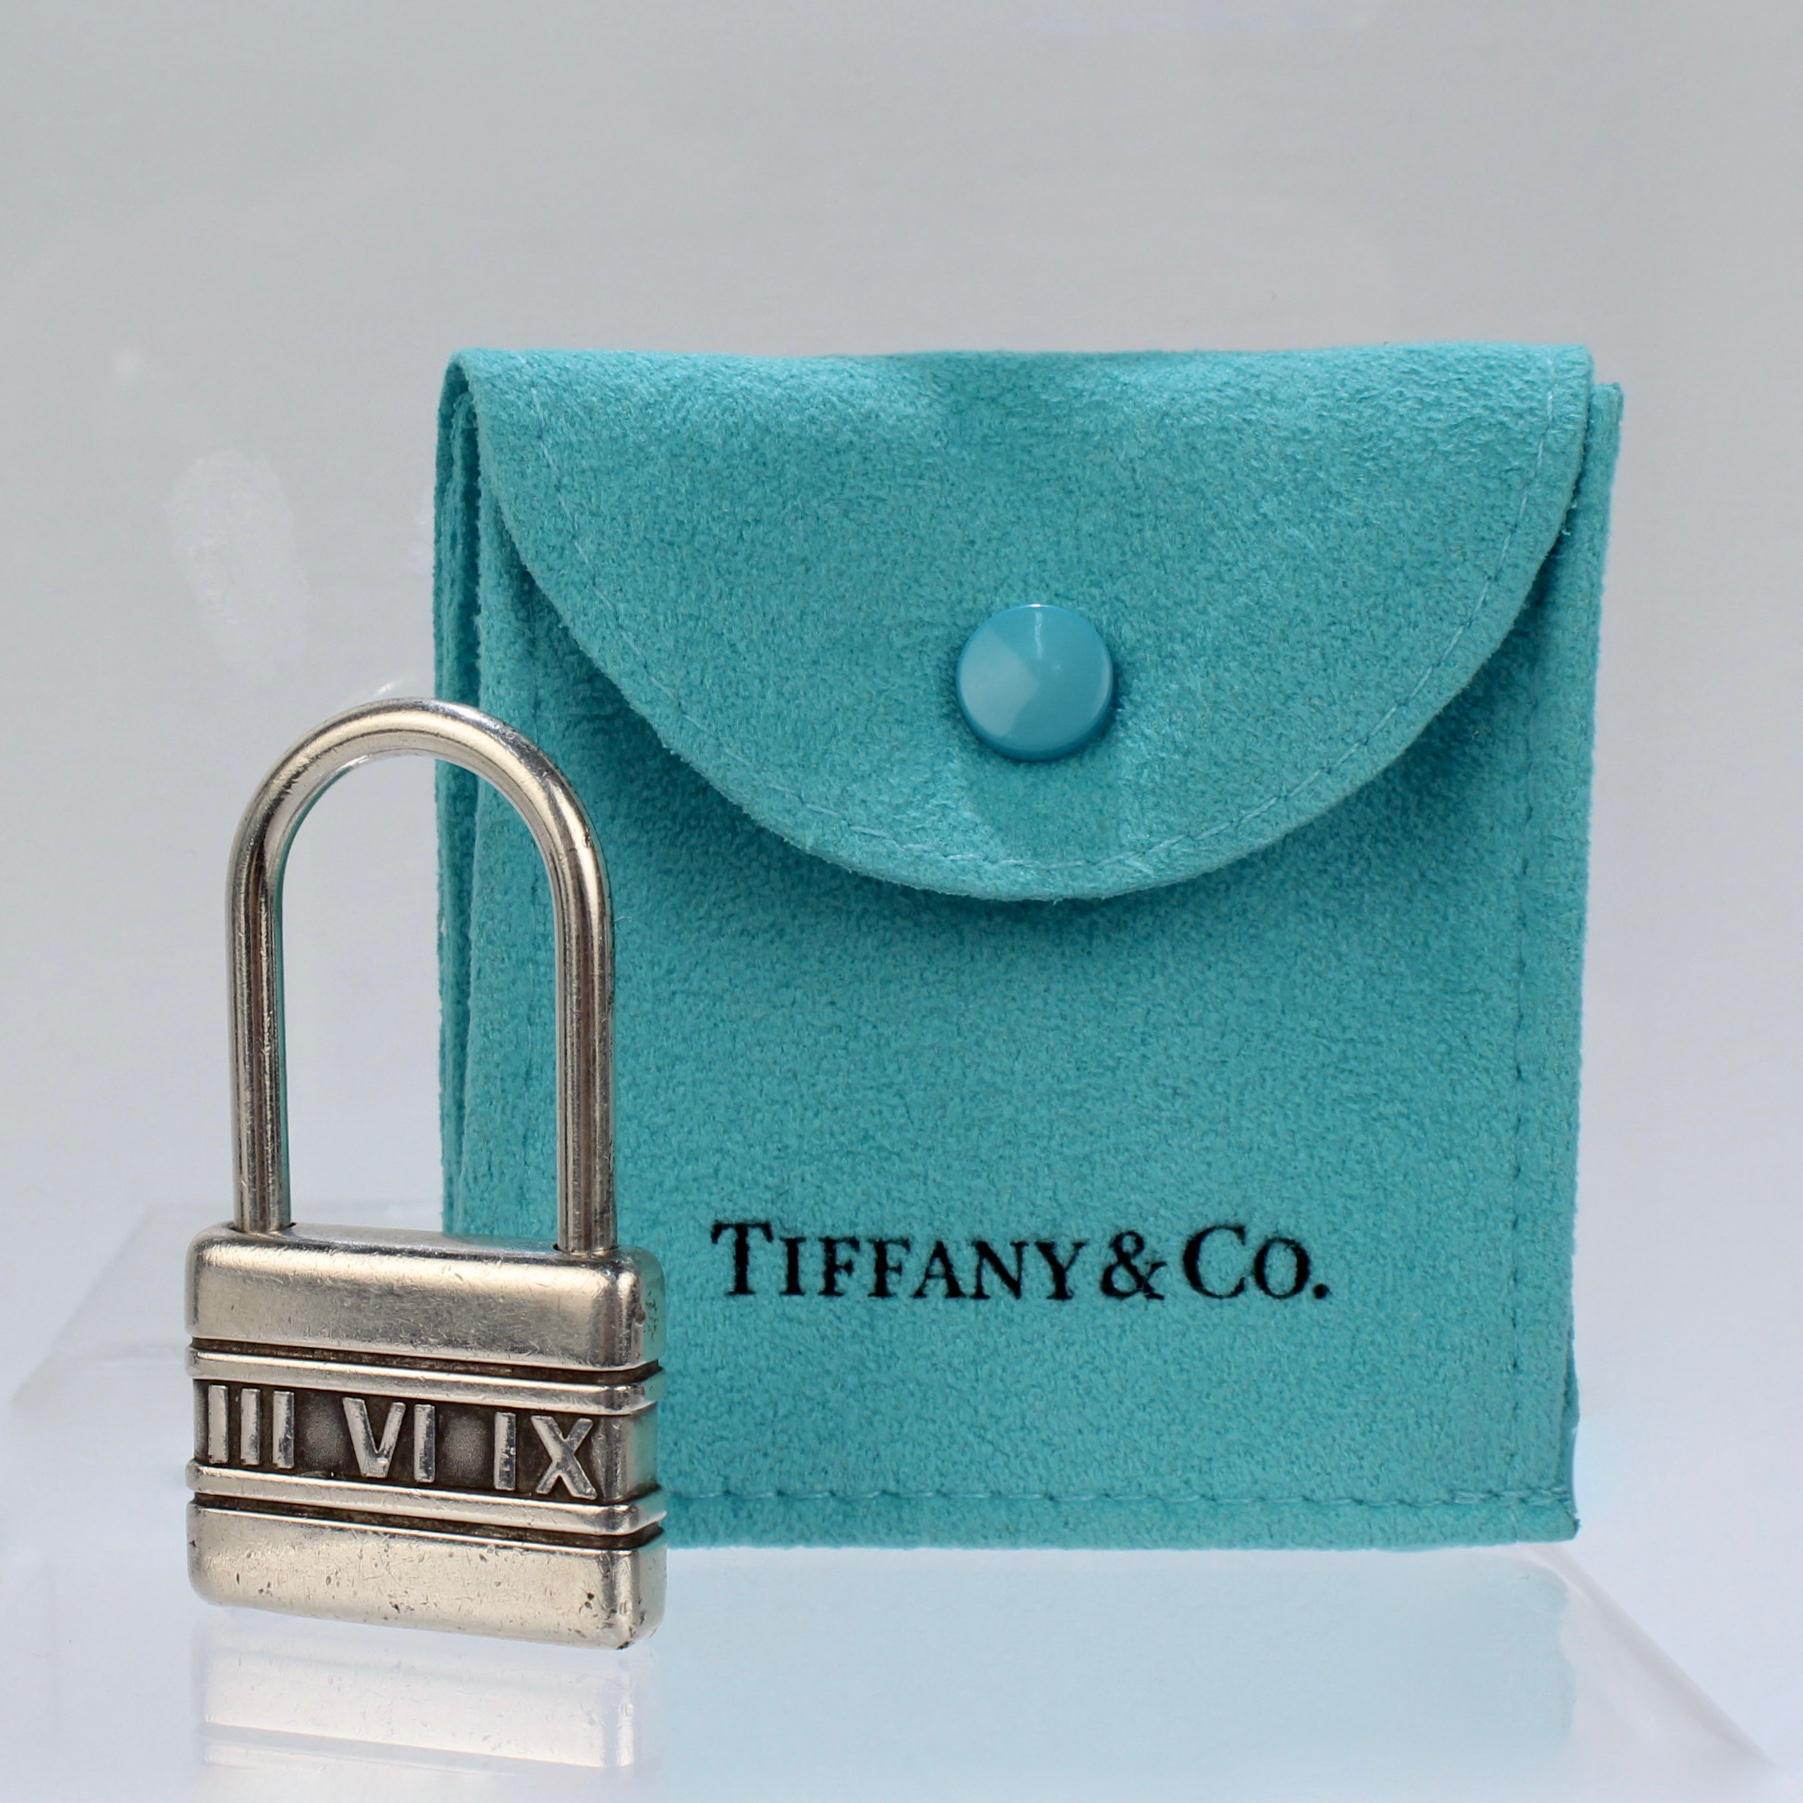 Eine sehr schöne Vintage Tiffany & Co. Schlüsselhalter oder Schlüsselanhänger in Form eines Atlasschlosses.

Aus Sterlingsilber.

Einfach ein tolles Tiffany & Co. Alltagsstück!

Datum:
Ende des 20. Jahrhunderts

Bedingung:
Es ist in insgesamt fair,